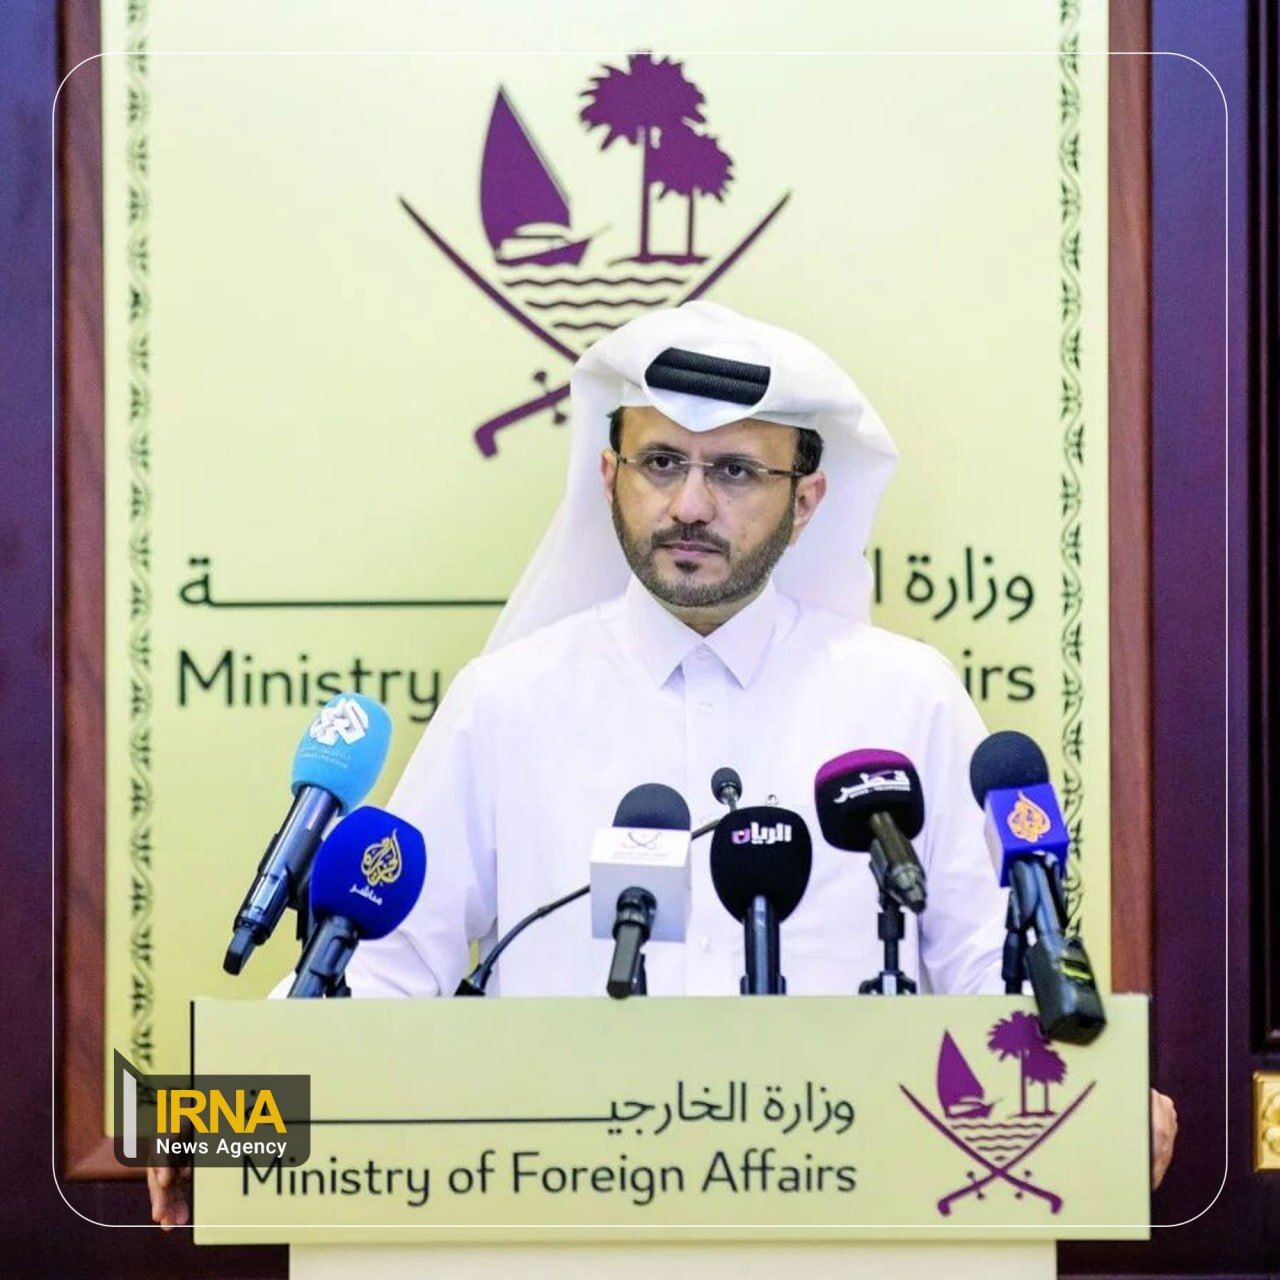 Katar kündigt die Möglichkeit an, neue Vereinbarungen zu treffen und die Spannungen der Region abzubauen